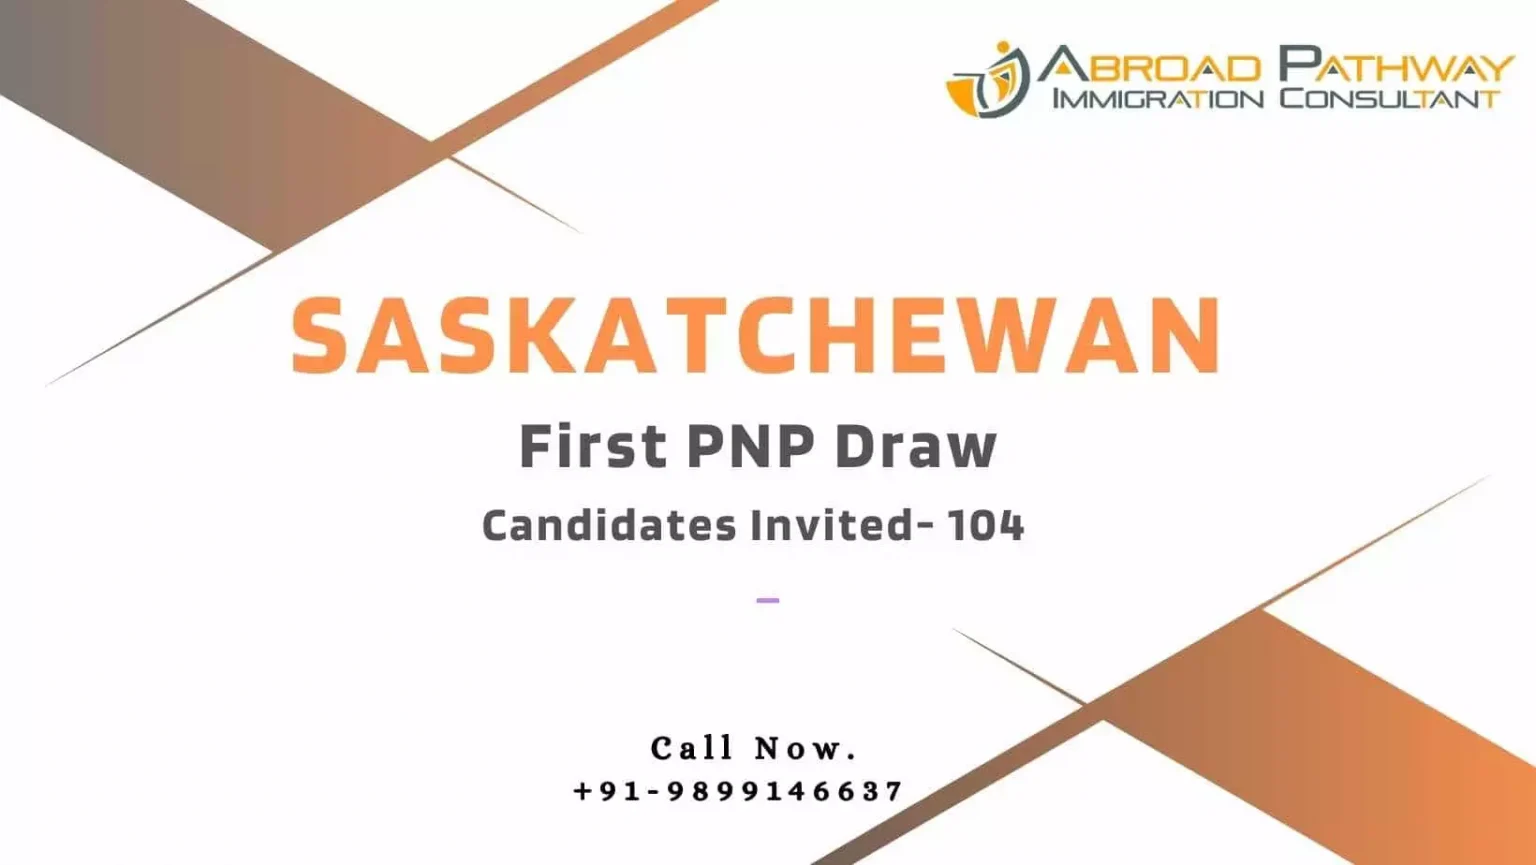 Saskatchewan invites 104 immigrants in first PNP Draw